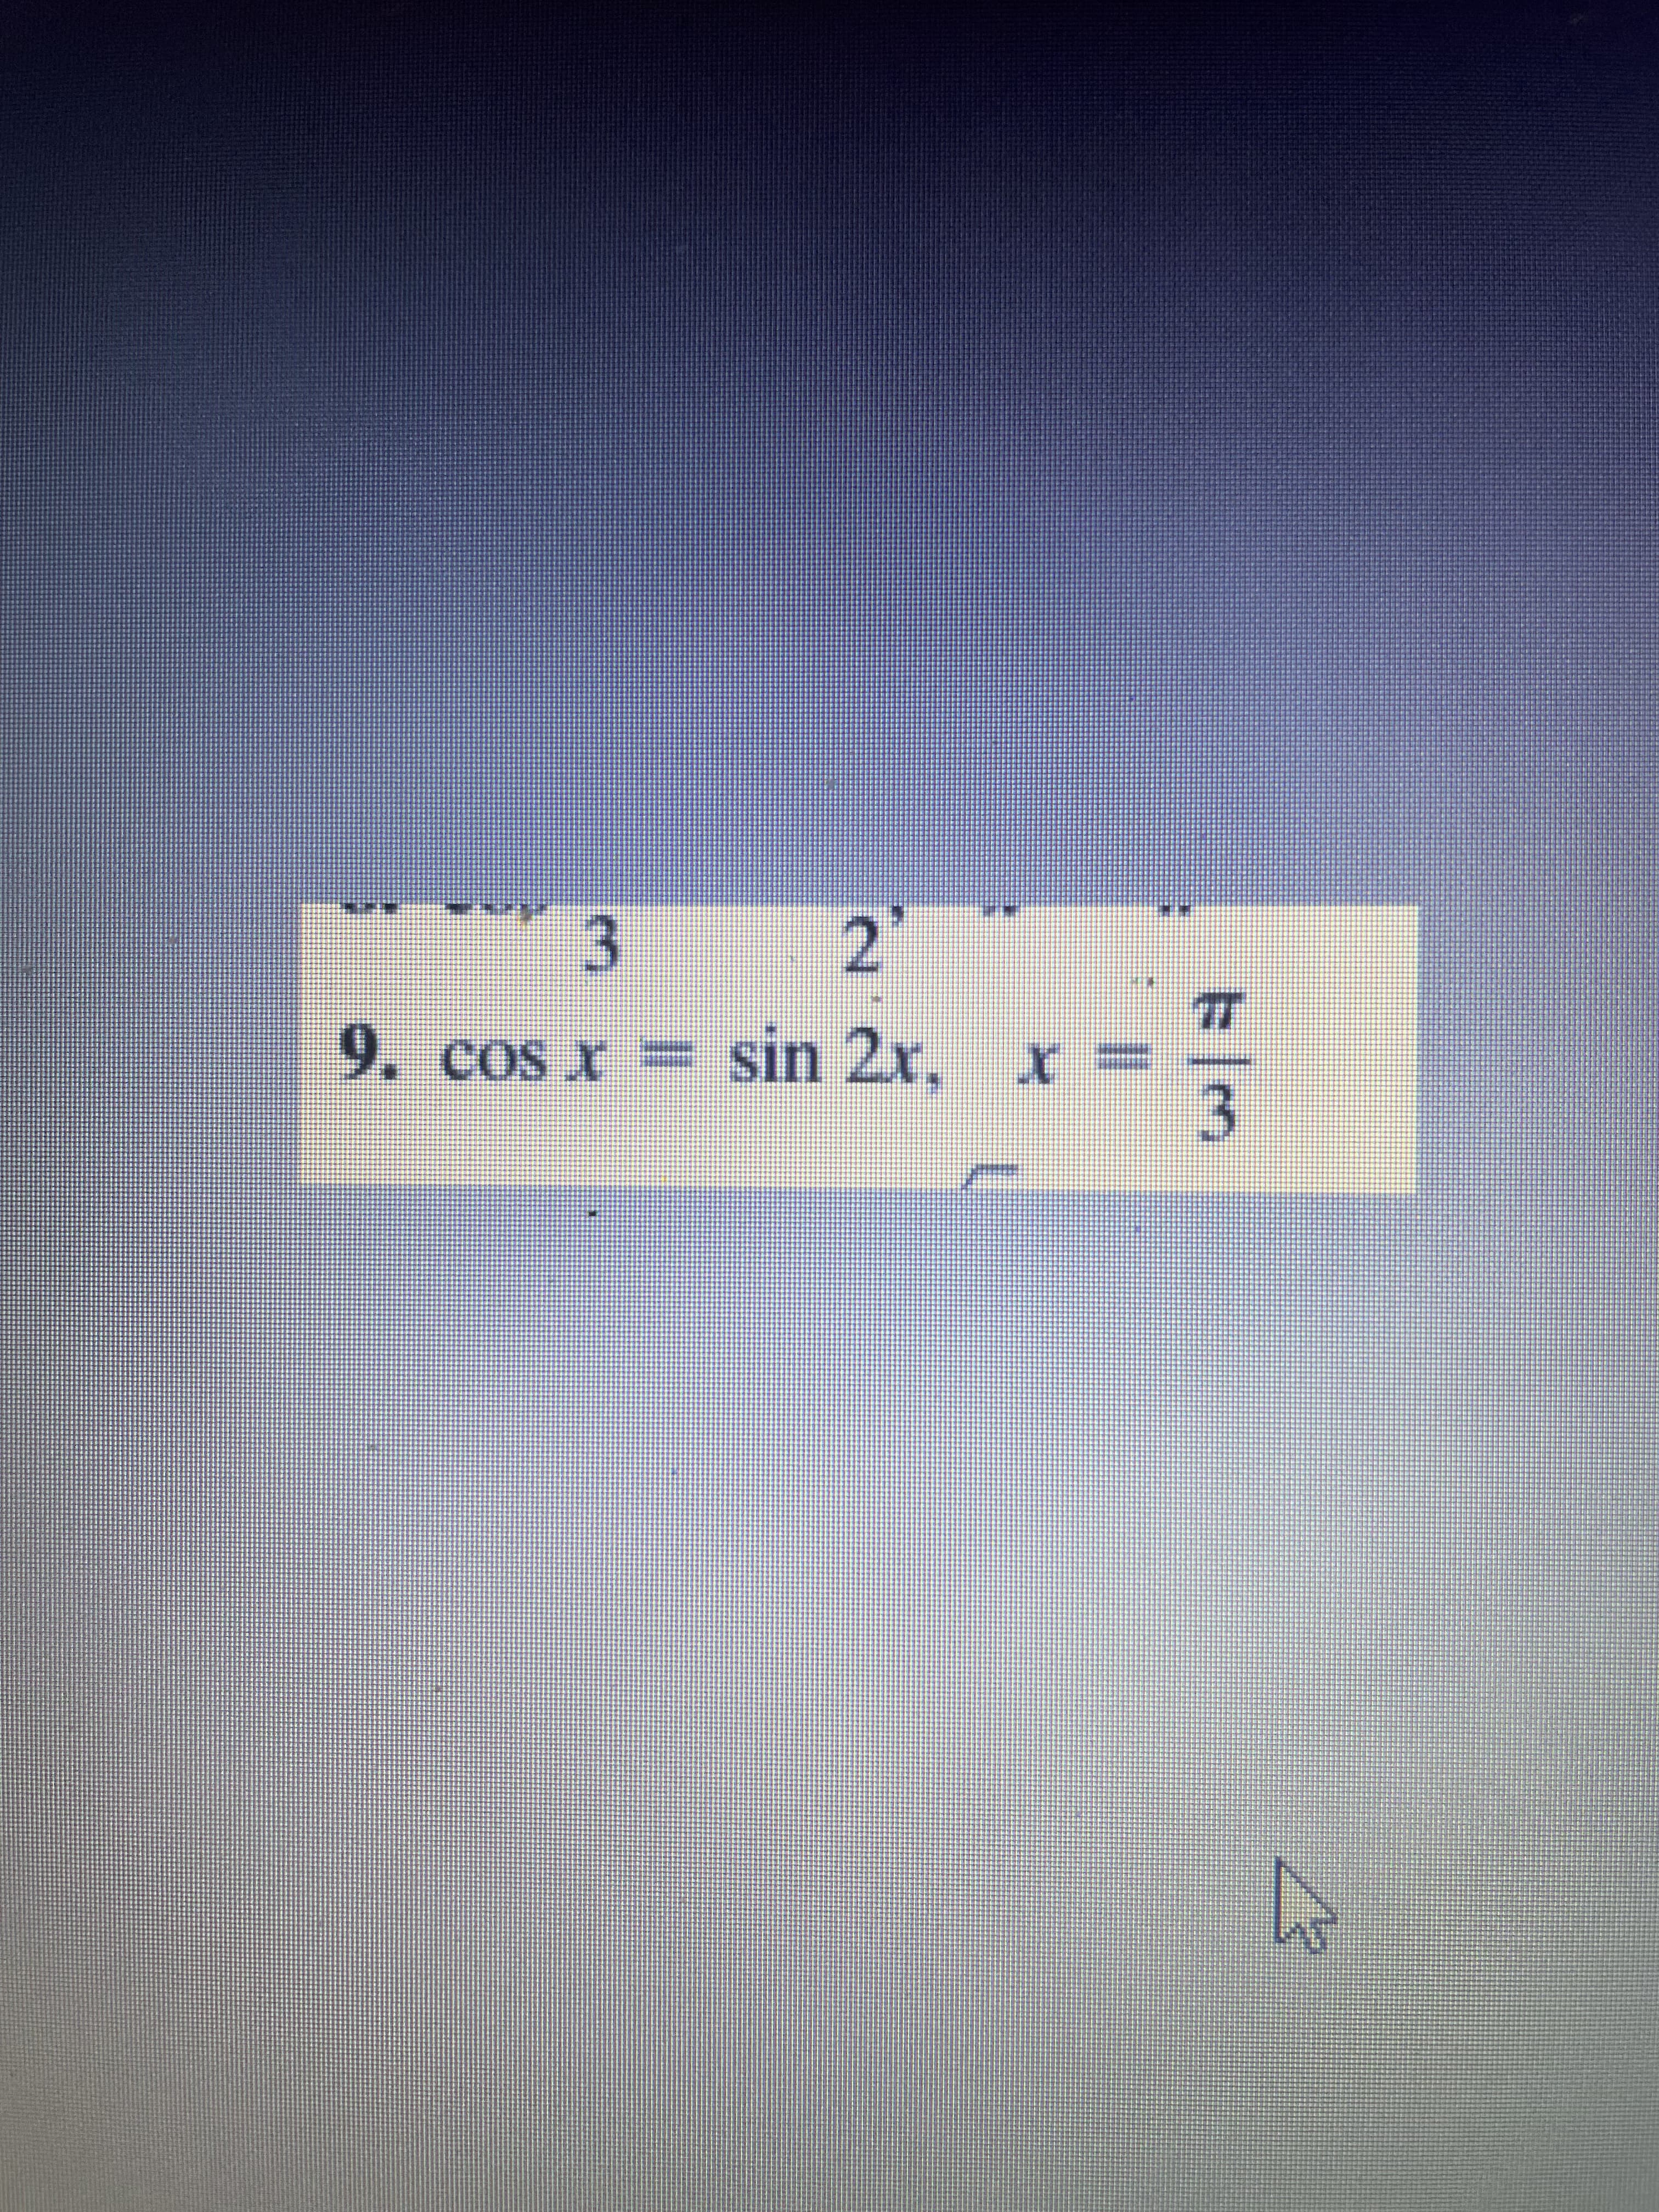 3.
2.
9. cos x =
sin 2x, x:
3.
